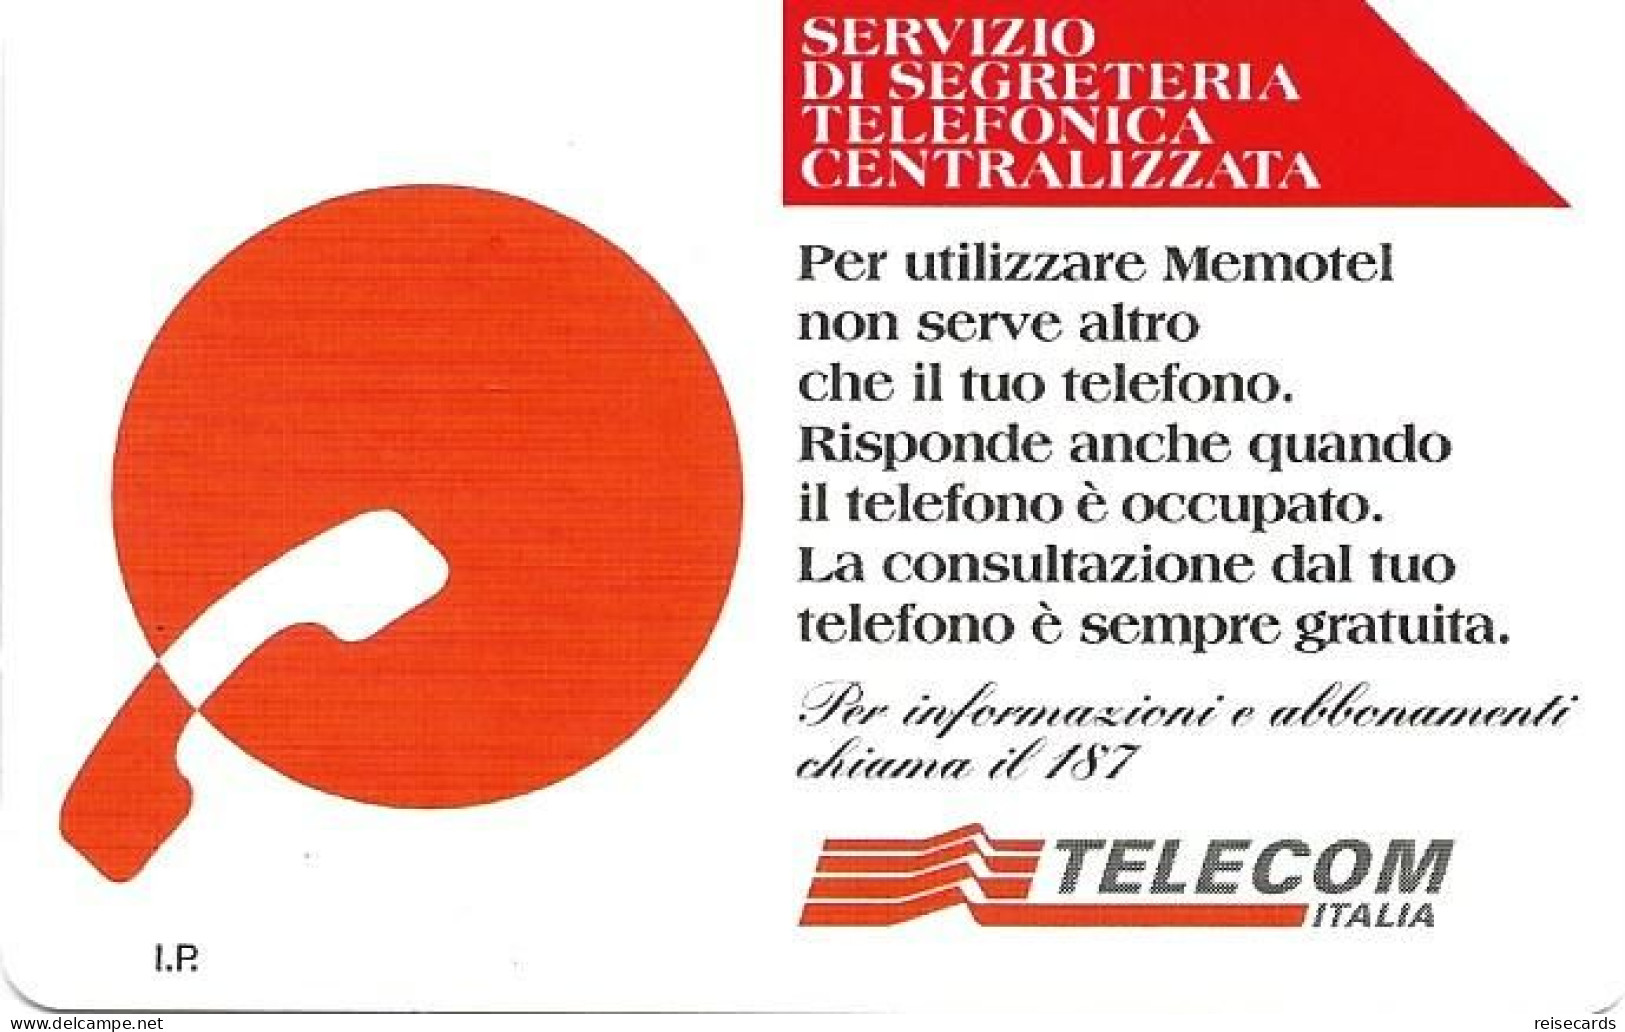 Italy: Telecom Italia - Servizio Di Segreteria Telefonica Centralizzata - Publiques Publicitaires